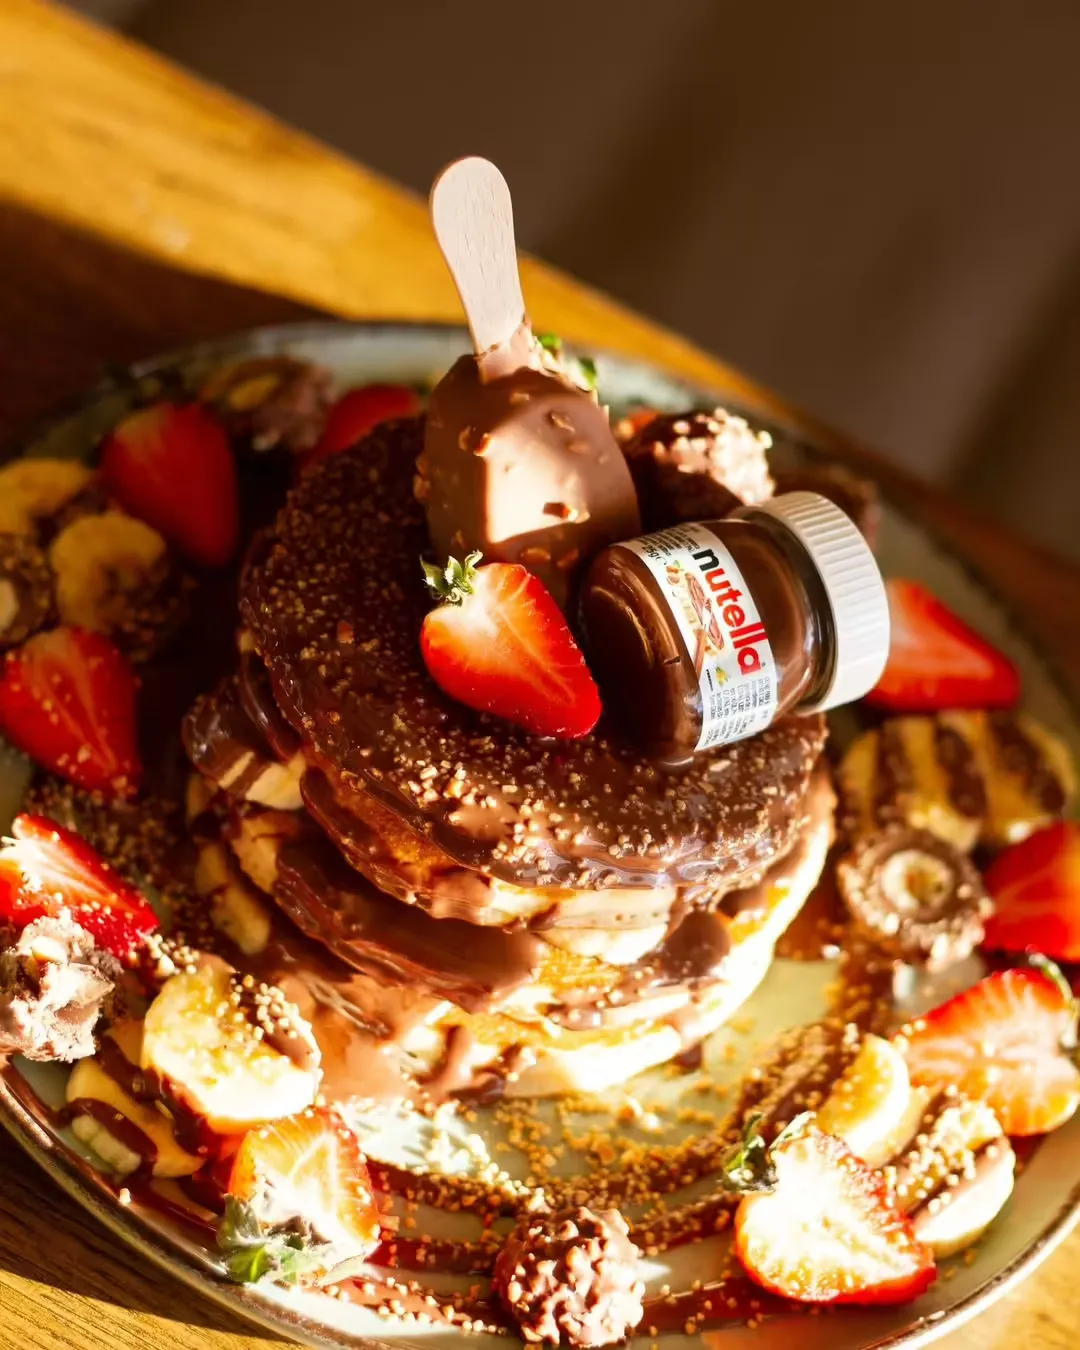 Imagen de un pancake con chocolate